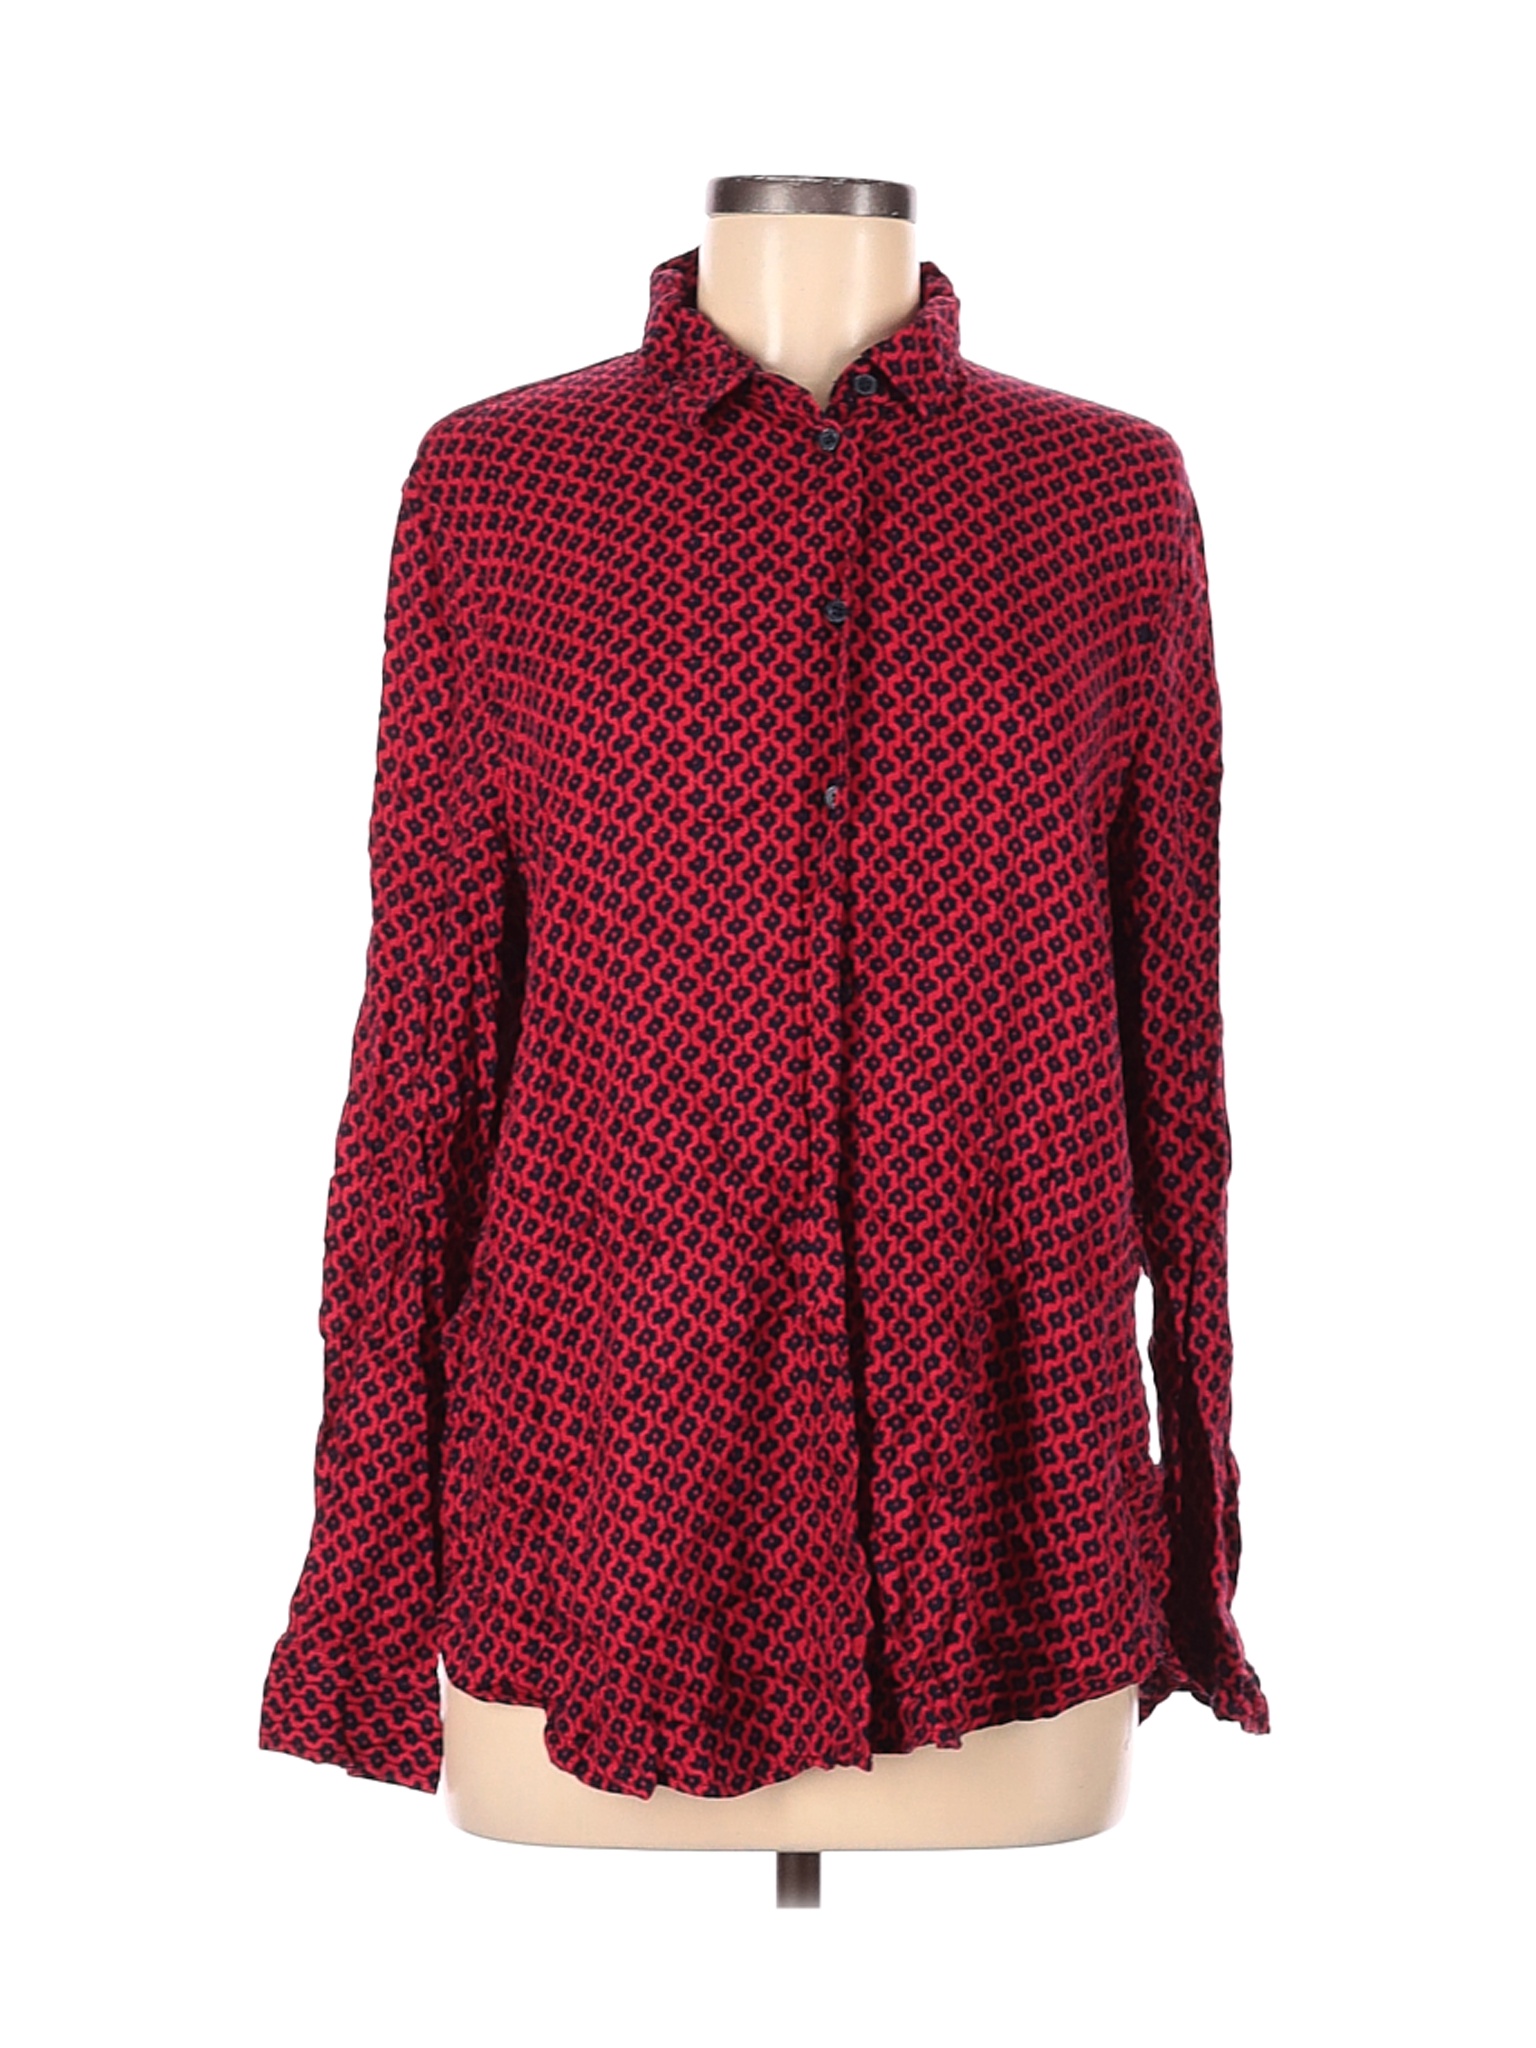 Banana Republic Factory Store Women Red Long Sleeve Button-Down Shirt L ...